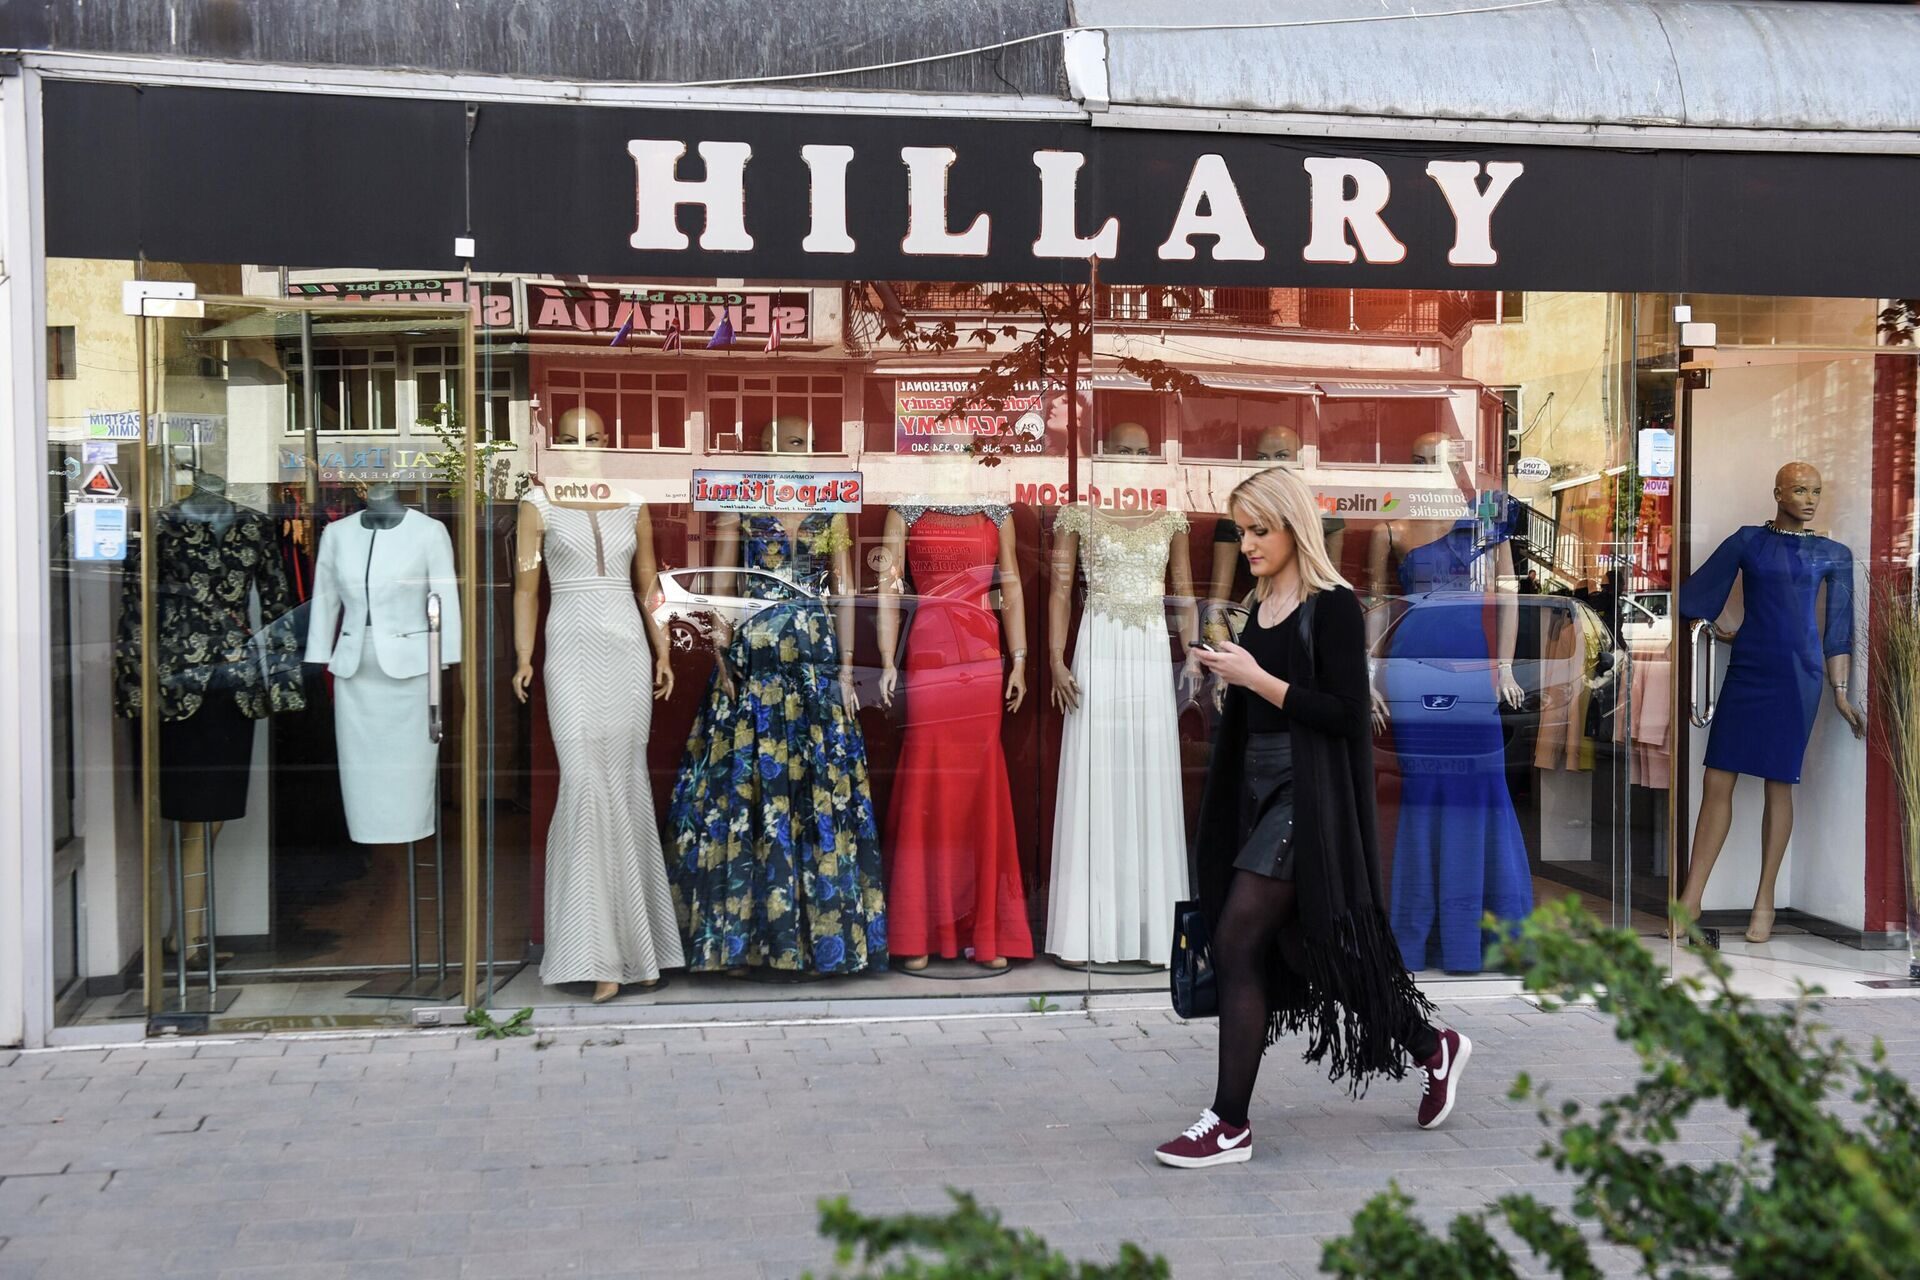 Hillary store